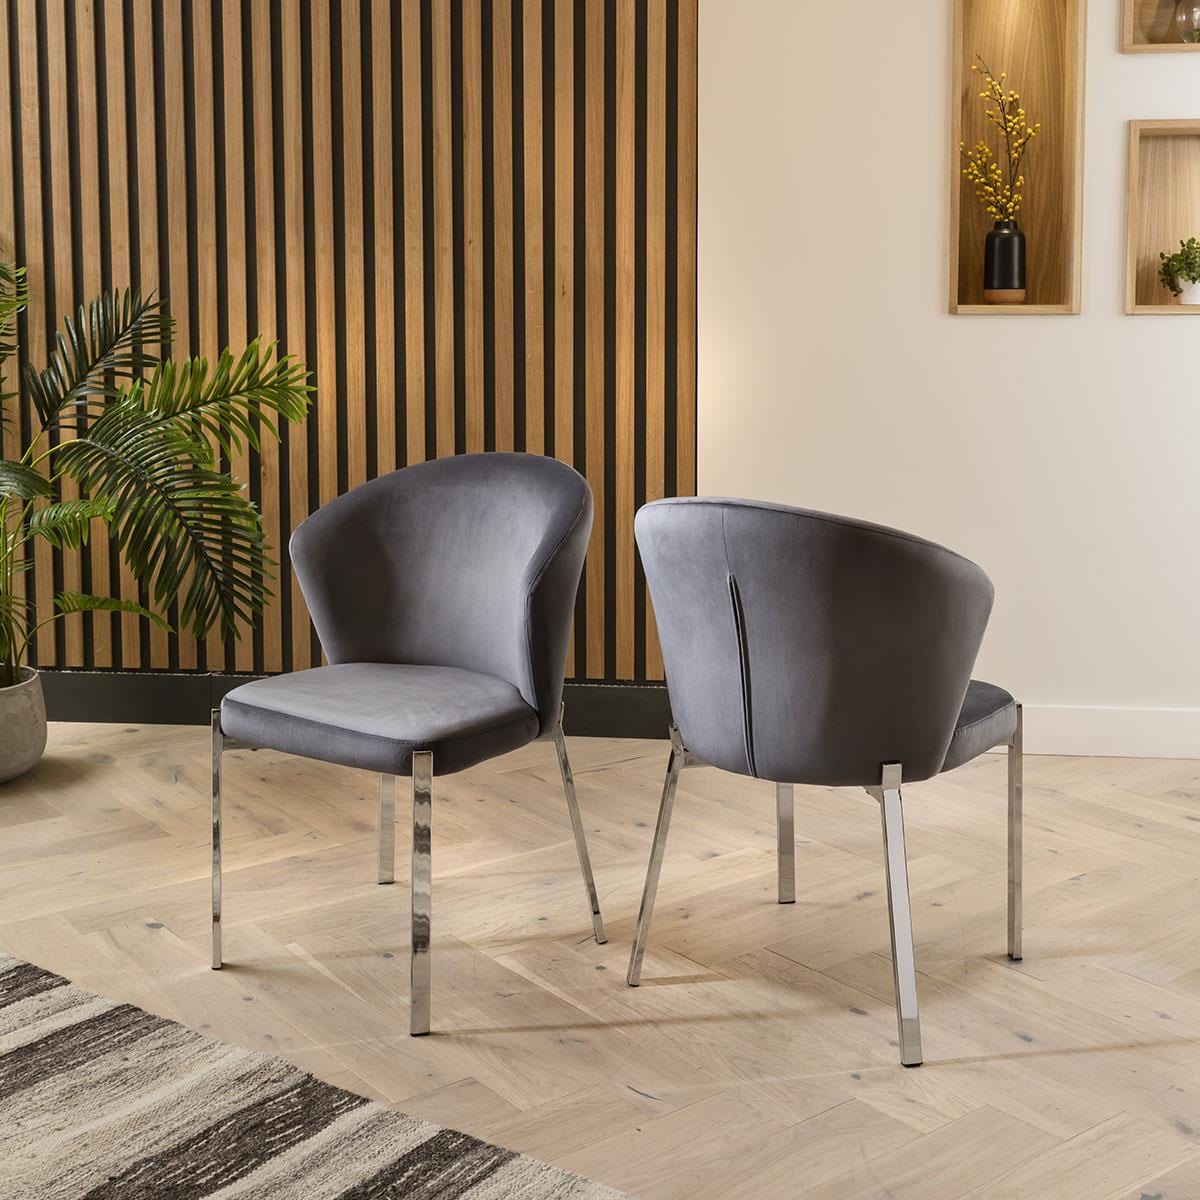 Quatropi Modern Glass Pedestal Table & Grey Velvet Chairs - 6 Seater Dining Set